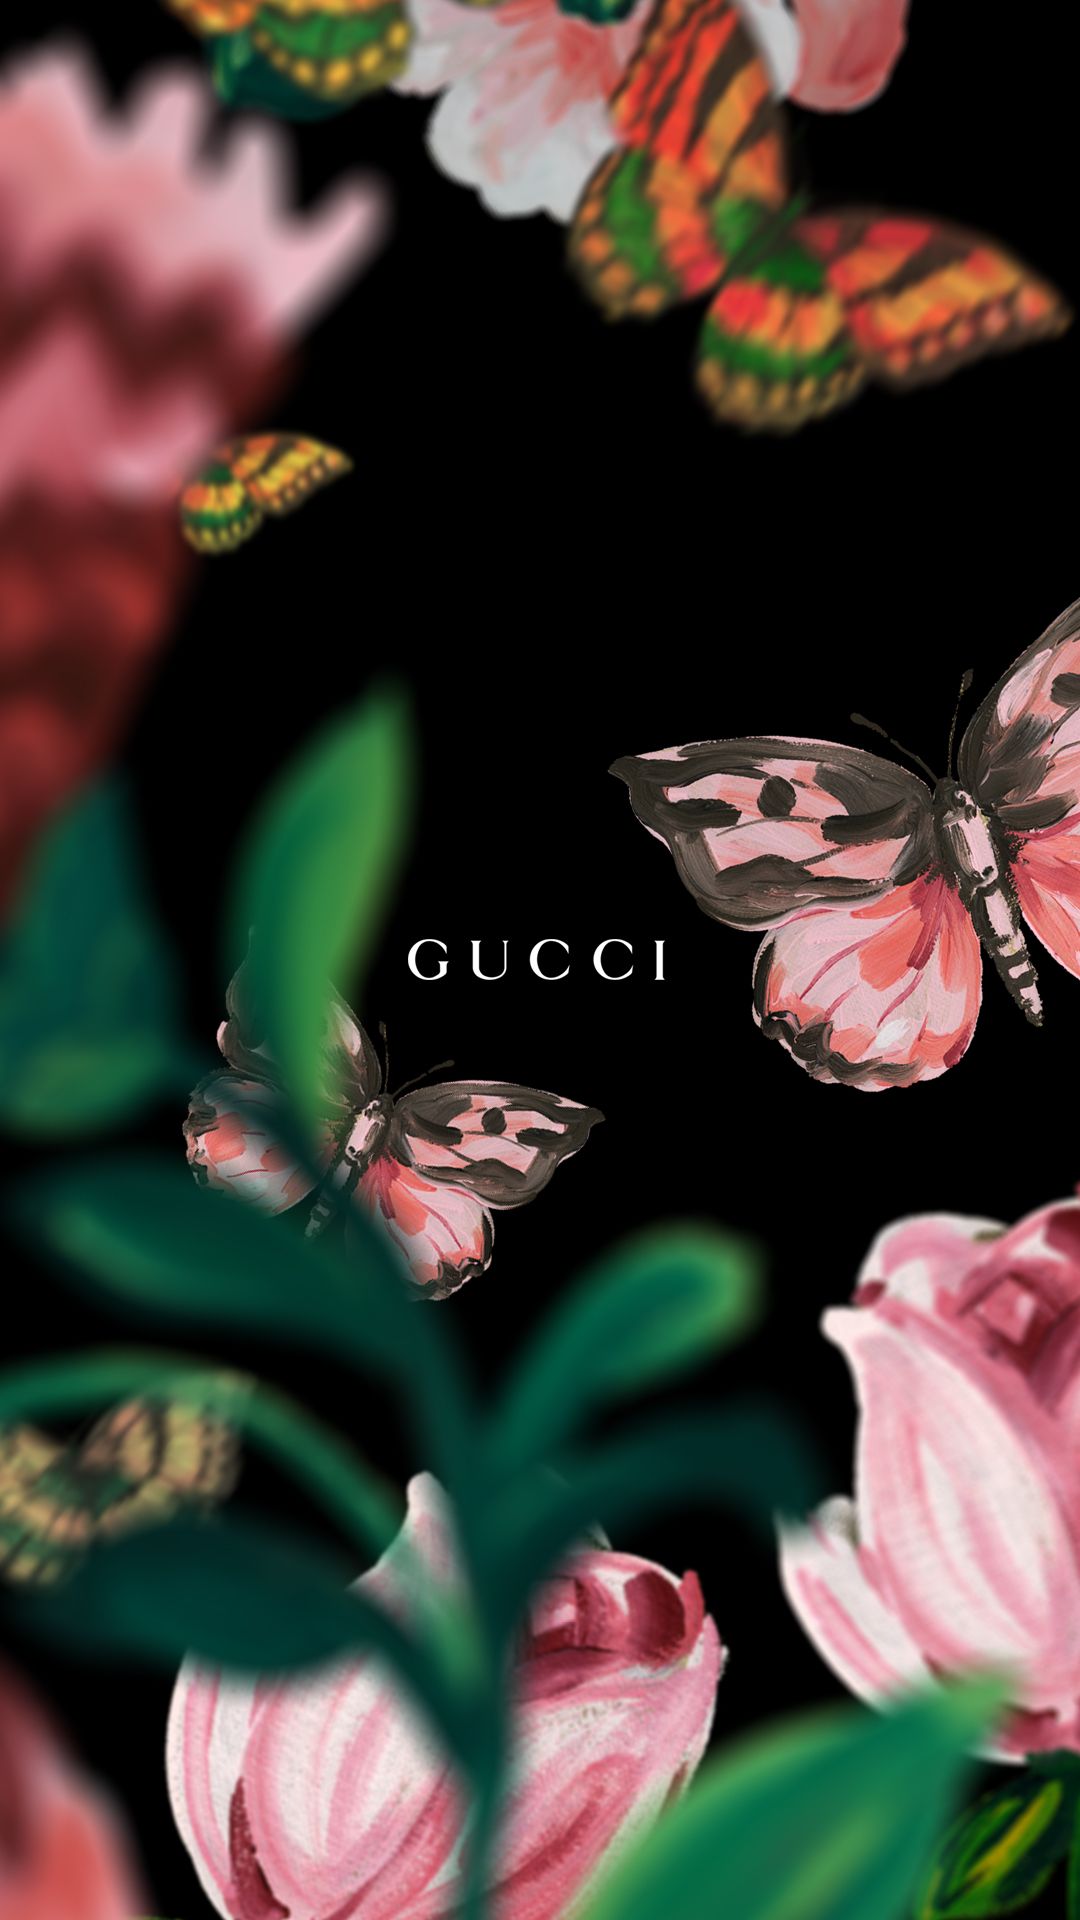 Gucci Wallpaper. Gucci Dope Wallpaper